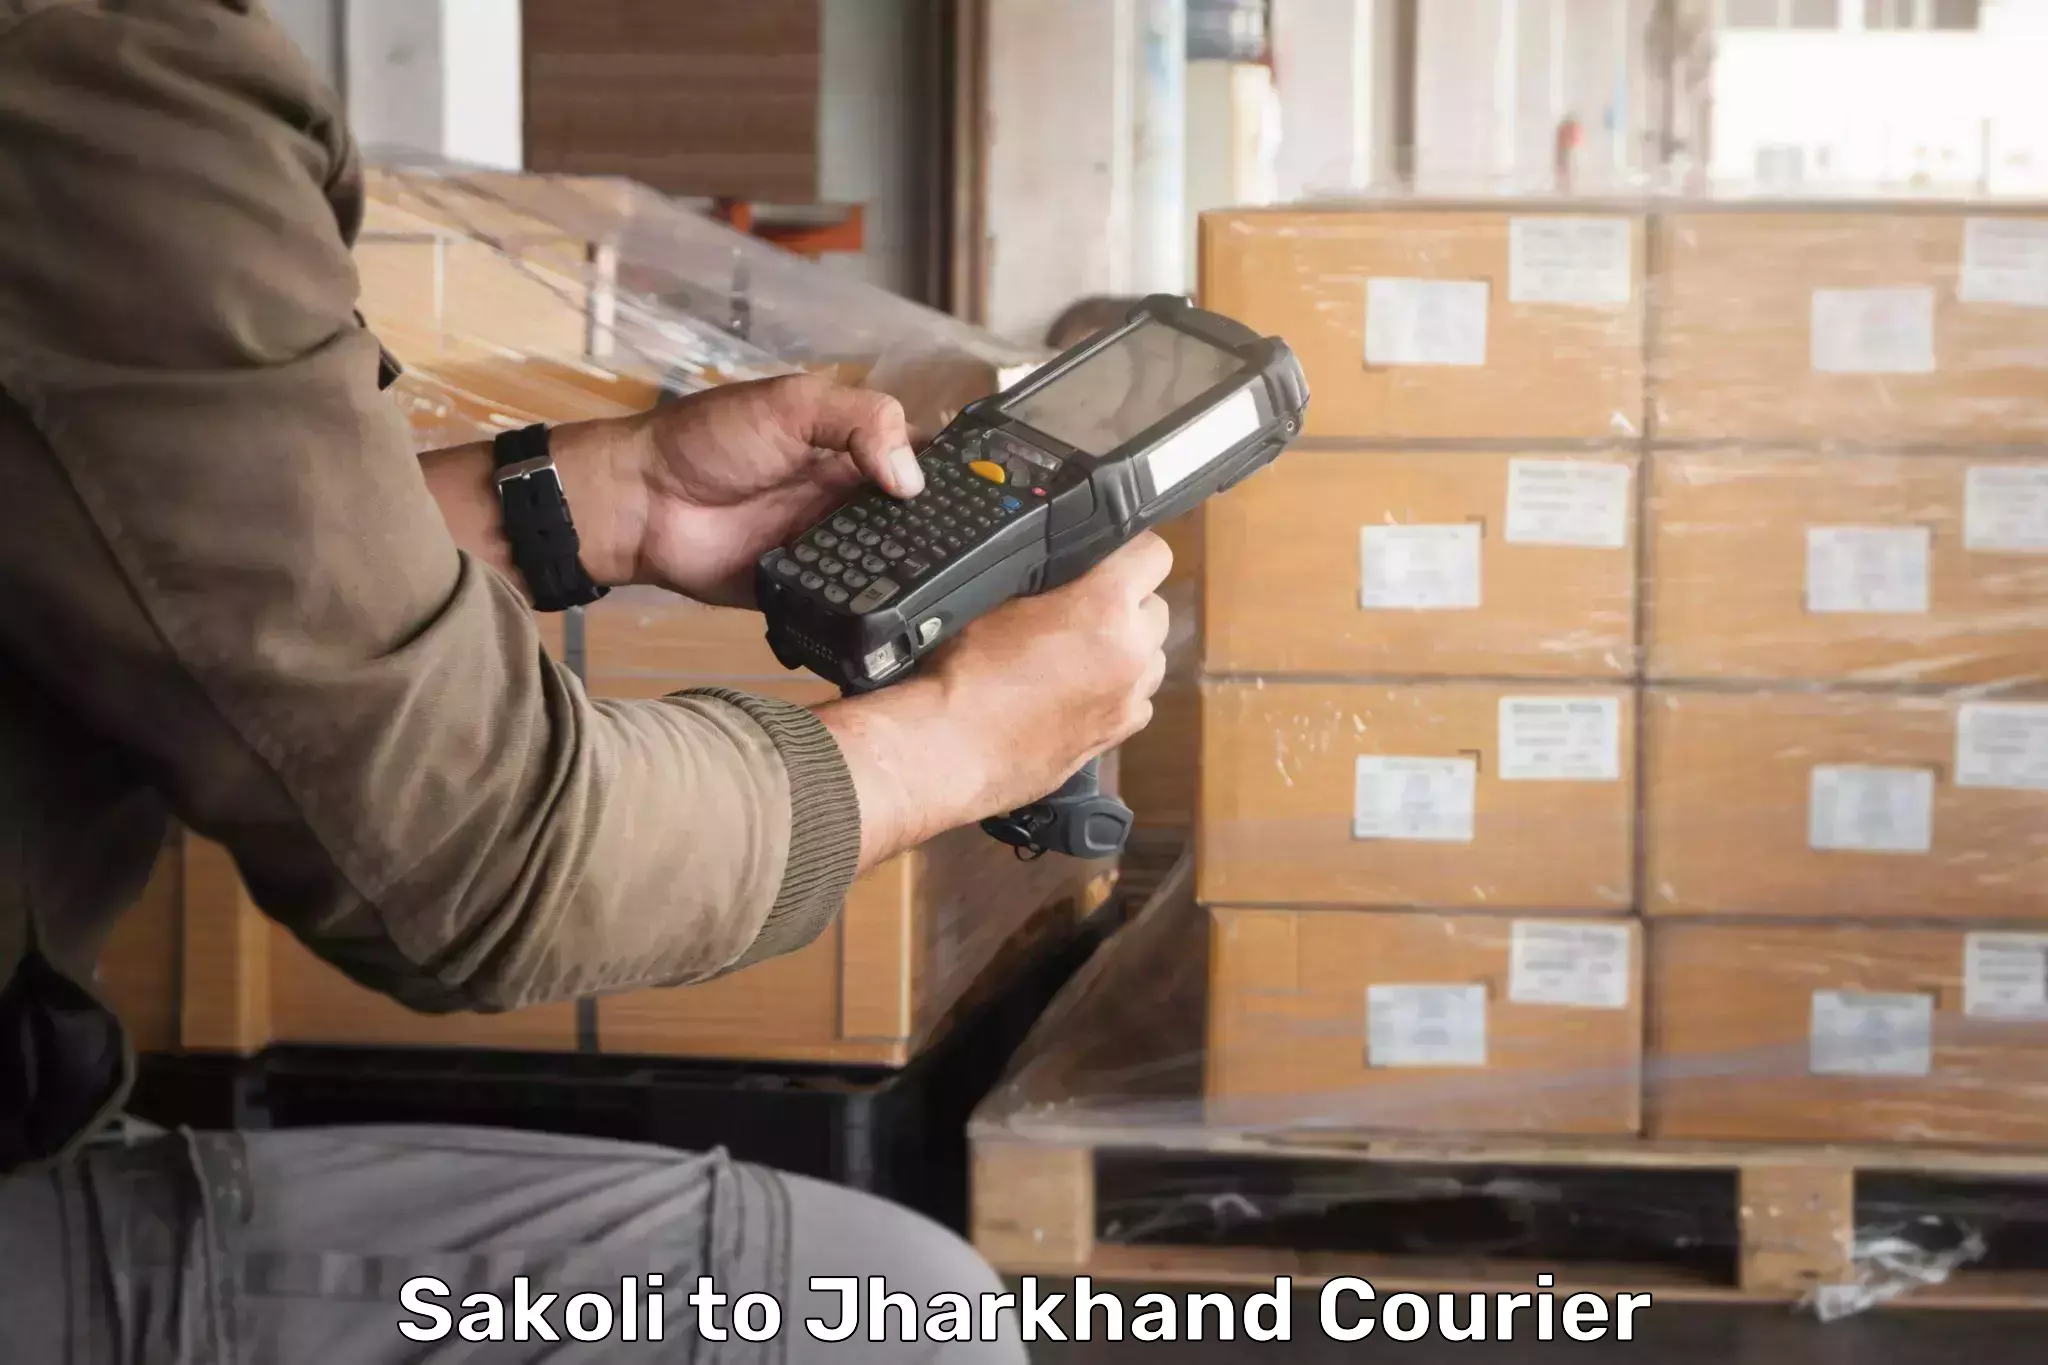 Large package courier Sakoli to Bagodar